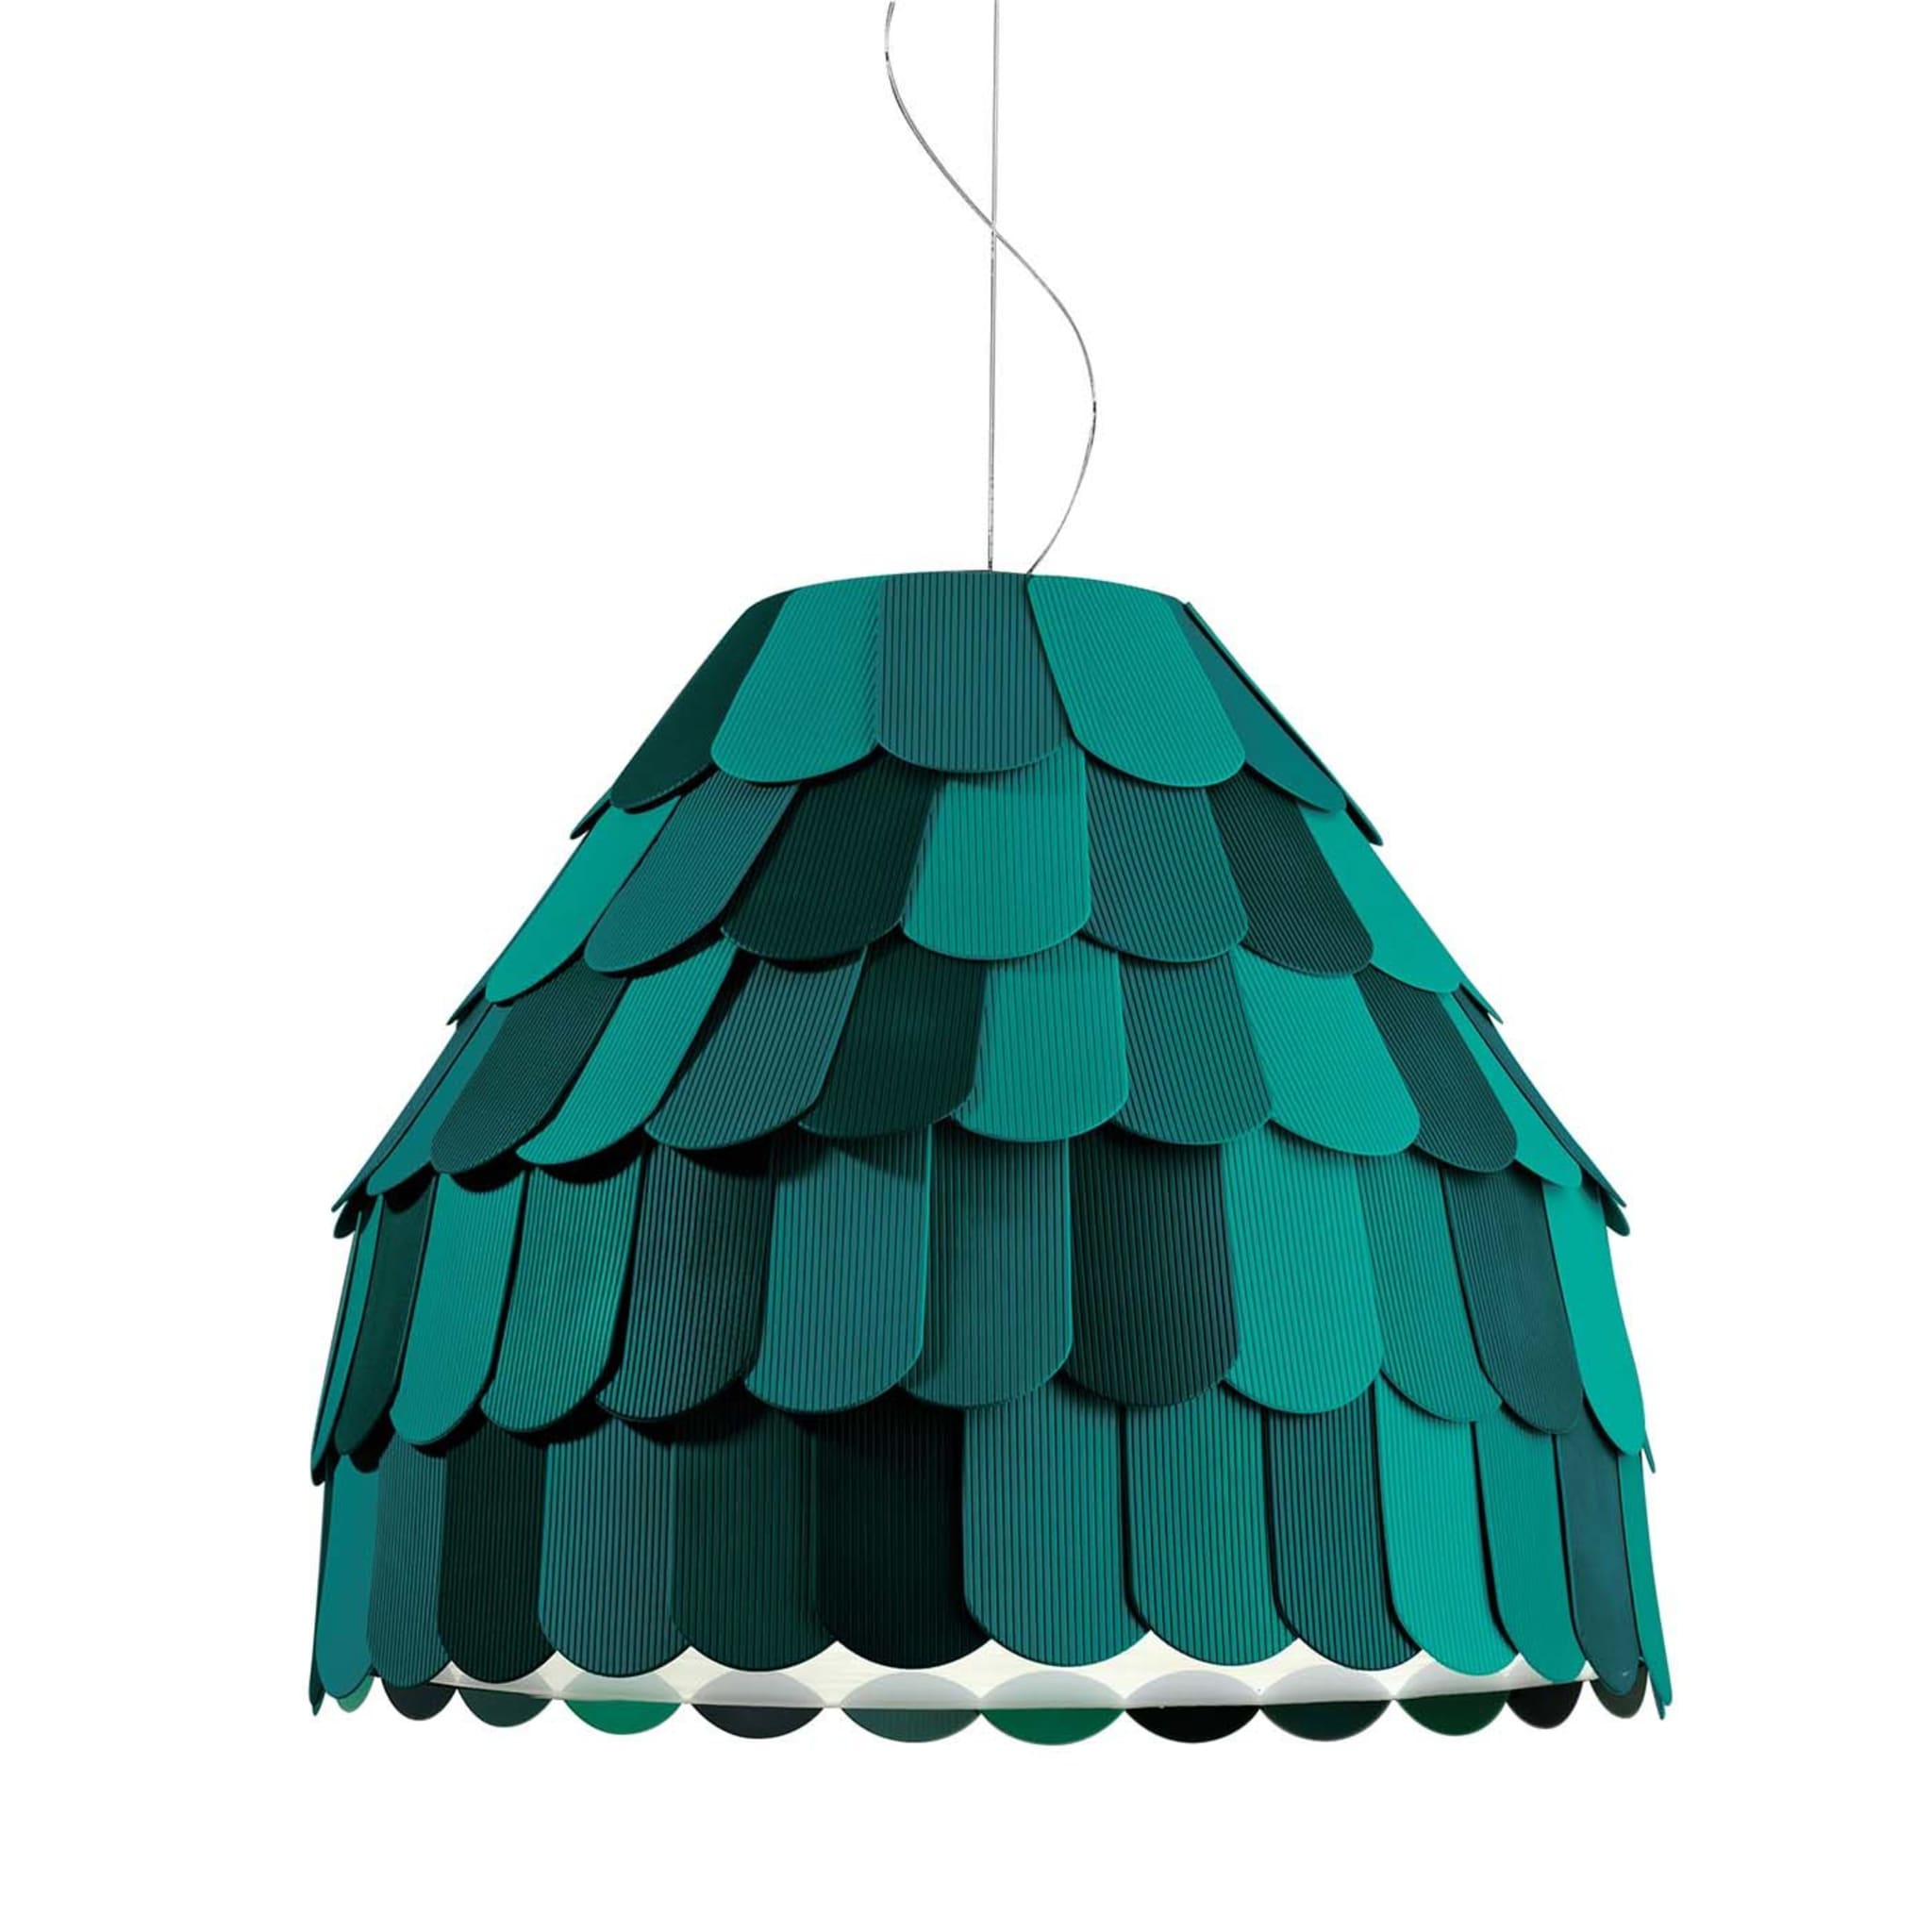 Roofer Green Pendant Lamp by Benjamin Hubert - Main view